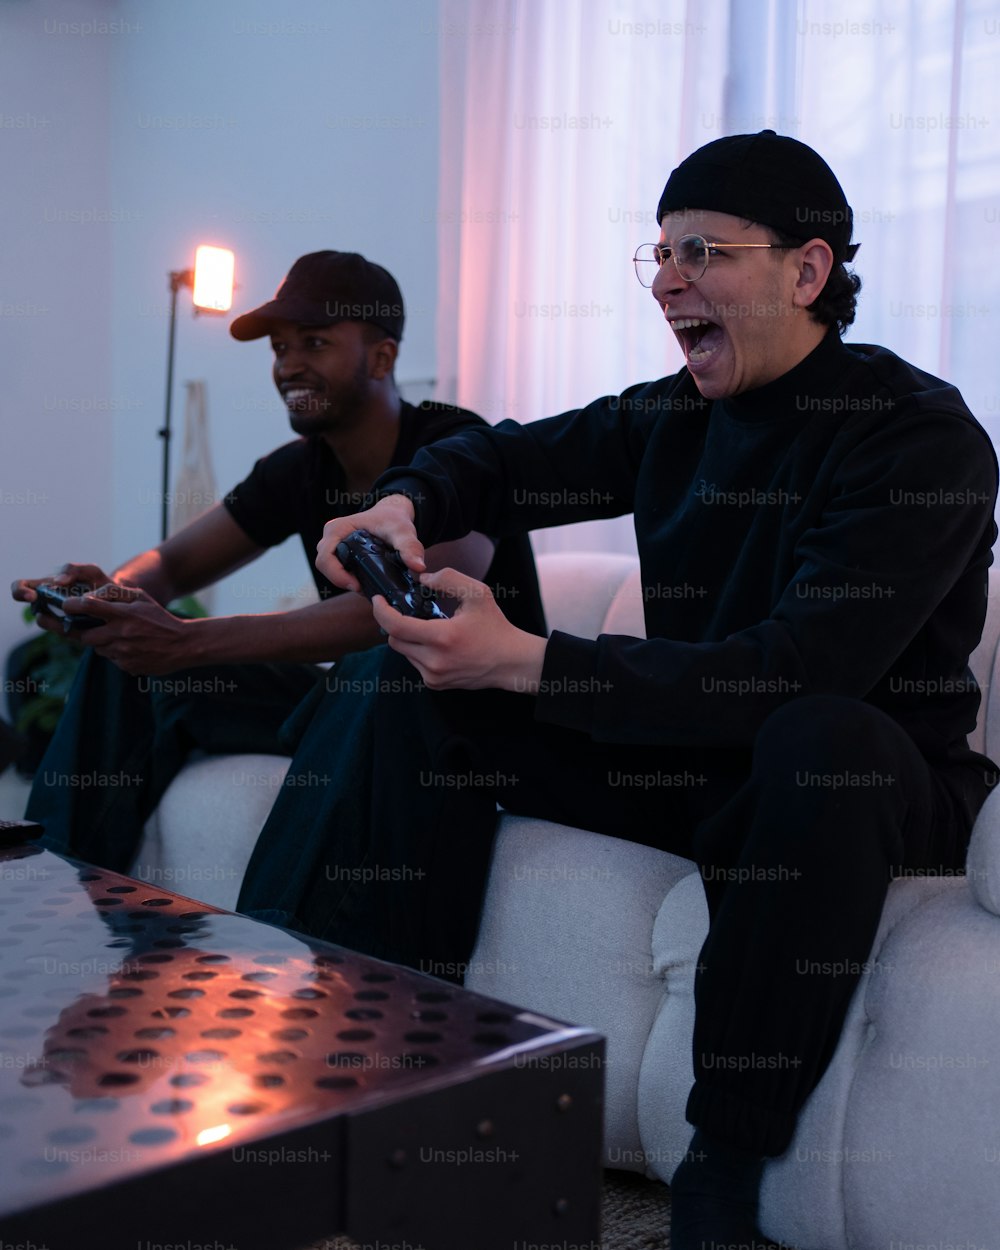 ソファに座ってビデオゲームをプレイする2人